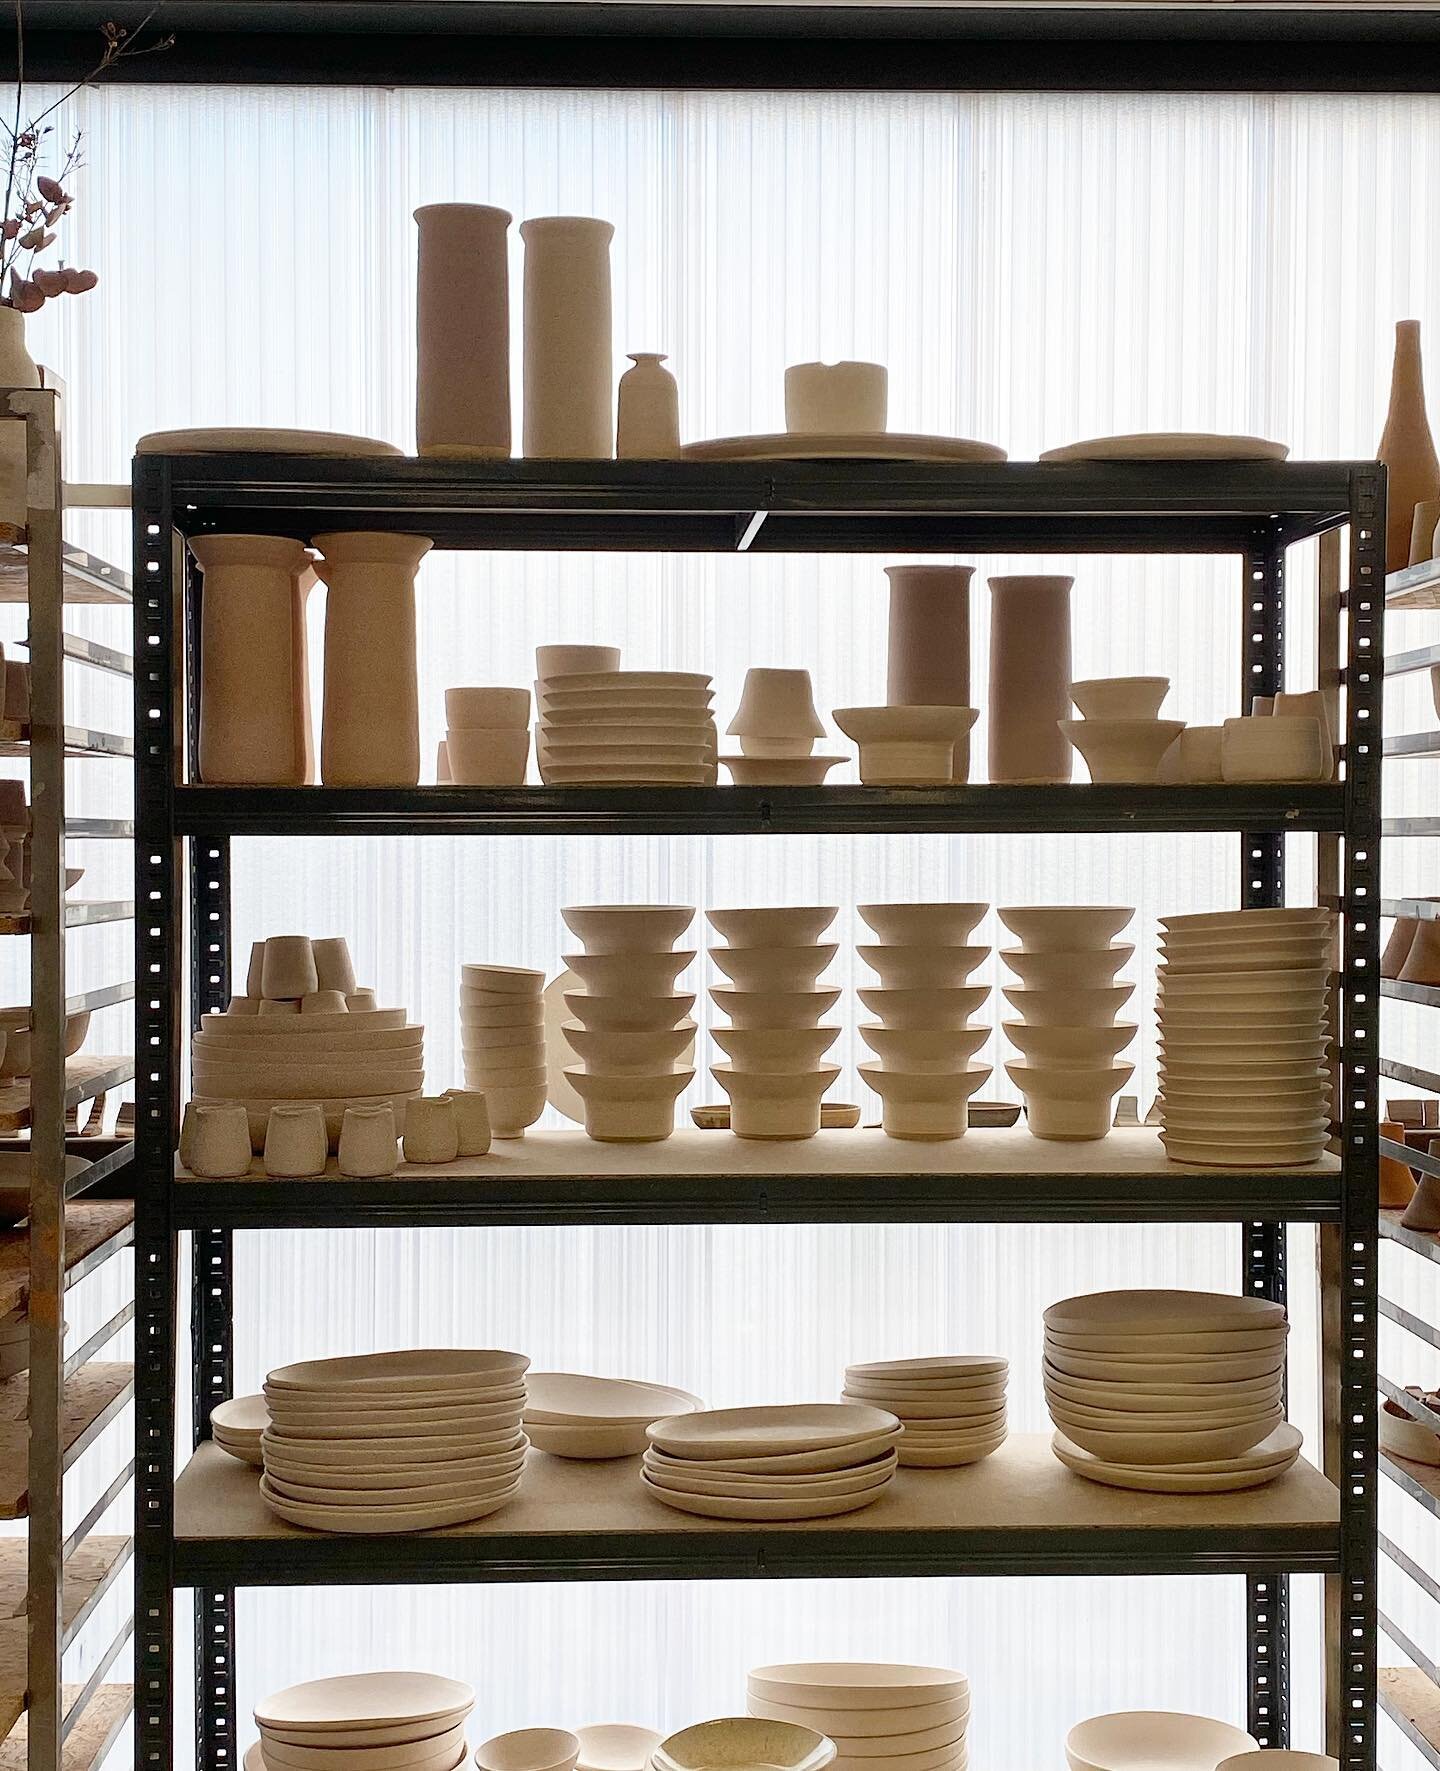 Ambiance d&rsquo;atelier, l&rsquo;&eacute;tag&egrave;re &agrave; d&eacute;gourdis, avant l&rsquo;&eacute;maillage.
.
.
.
#onmyshelf #vaisselle #assiette #ceramicstudio #ceramiste #lyon